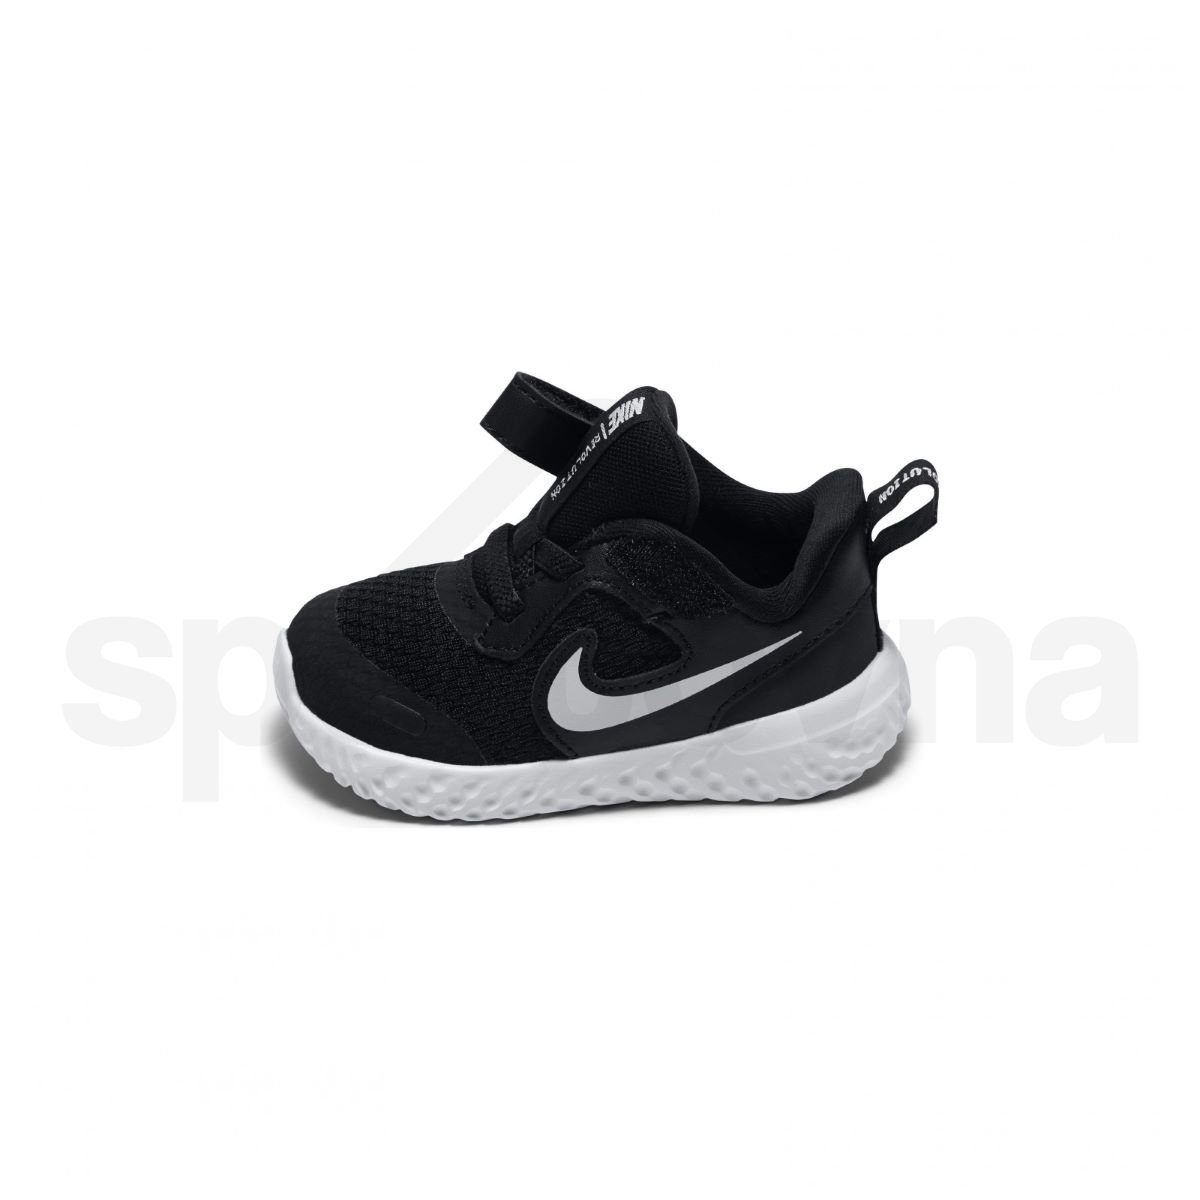 Obuv Nike Revolution 5 B - černá